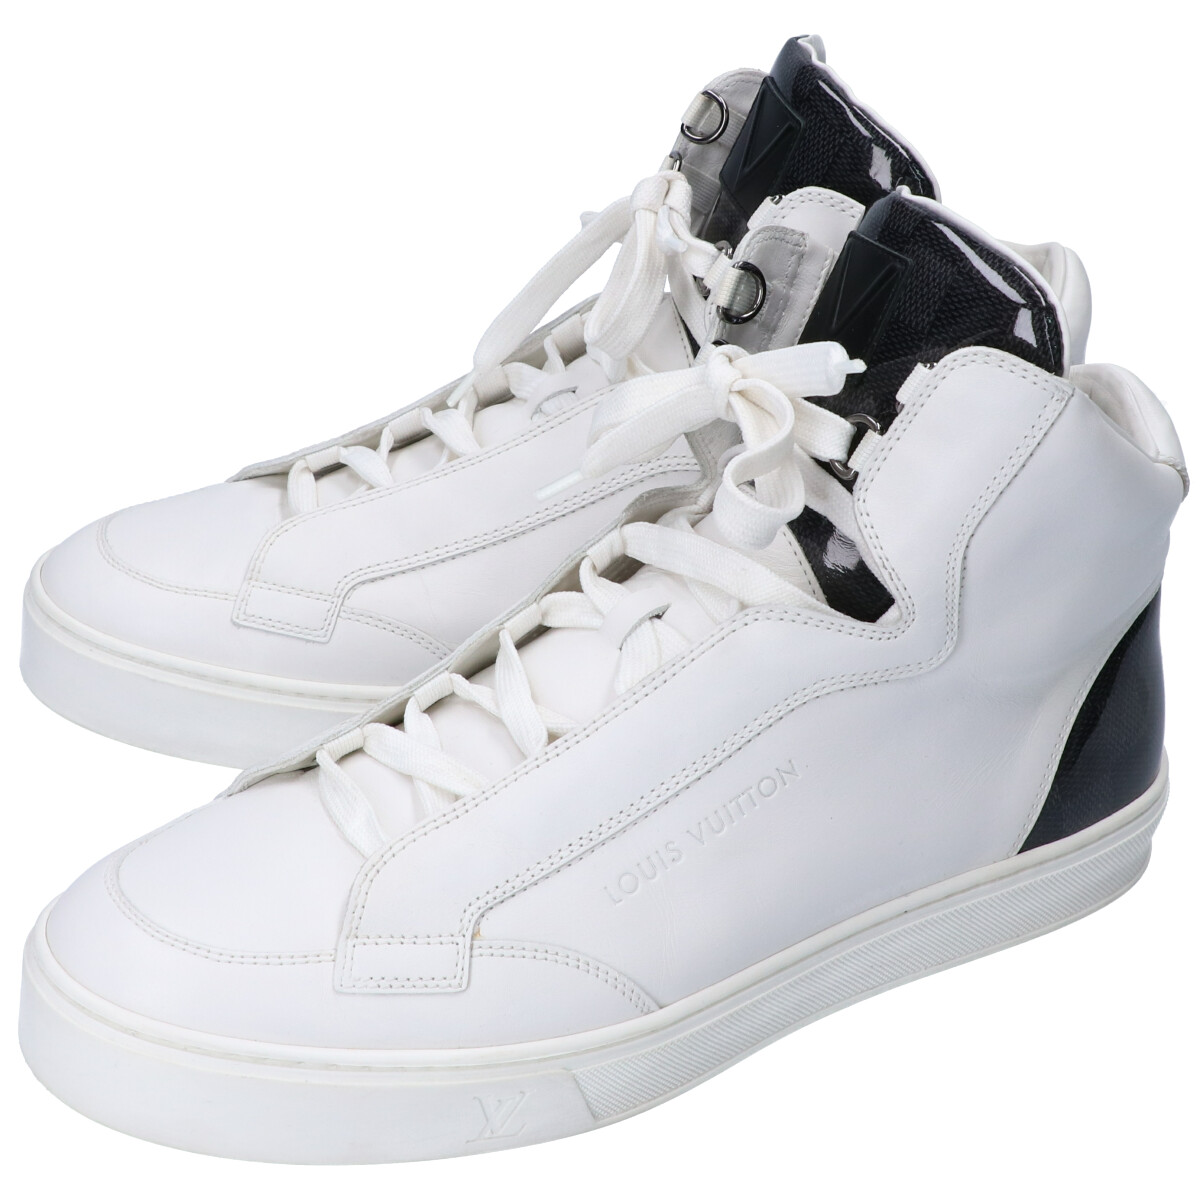 ルイヴィトンの靴の14年製 レザー×ダミエグラフィット ハイカットスニーカー メンズの買取価格・実績 2020年9月29日公開情報｜ブランド品